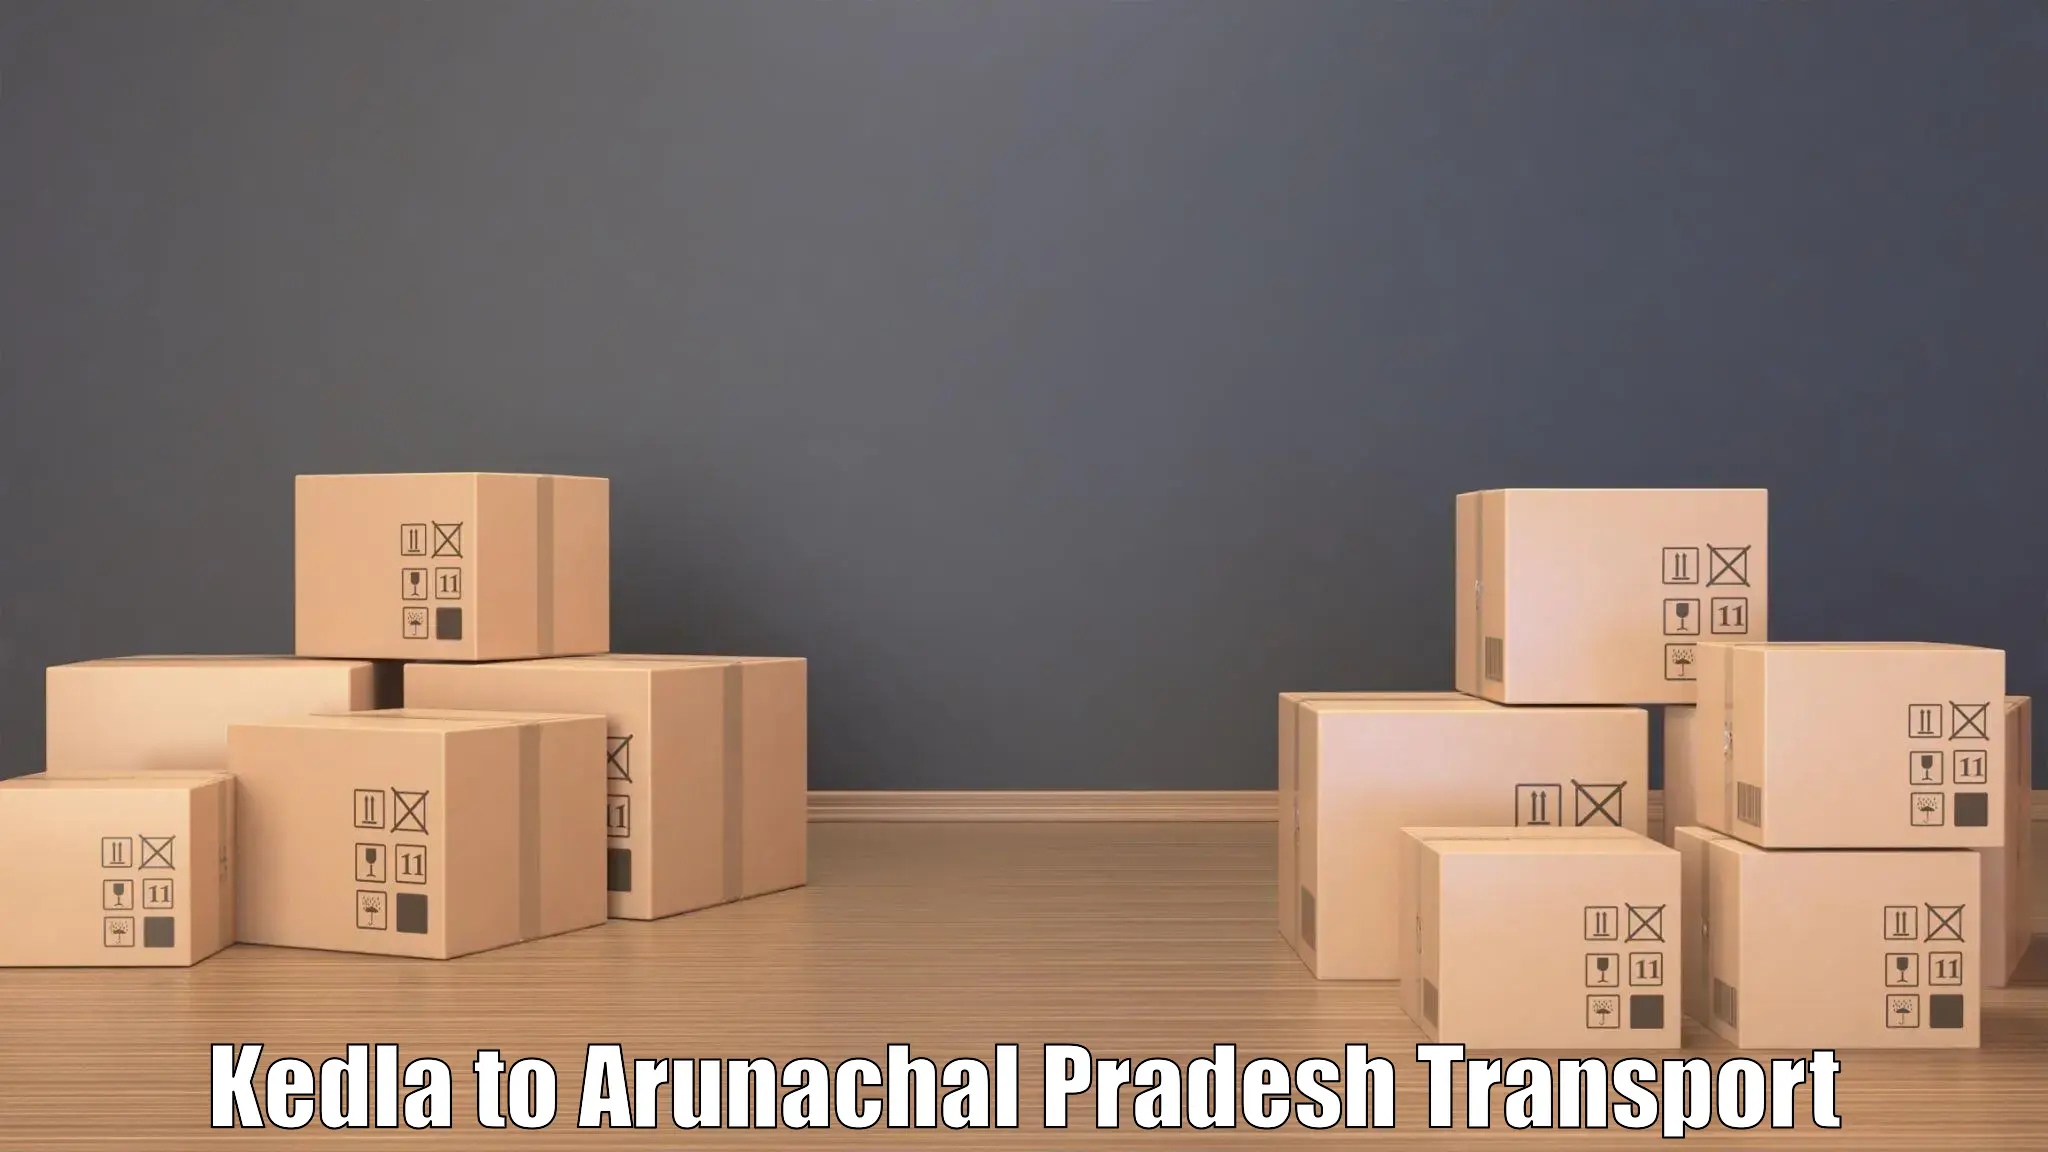 Online transport booking Kedla to Arunachal Pradesh